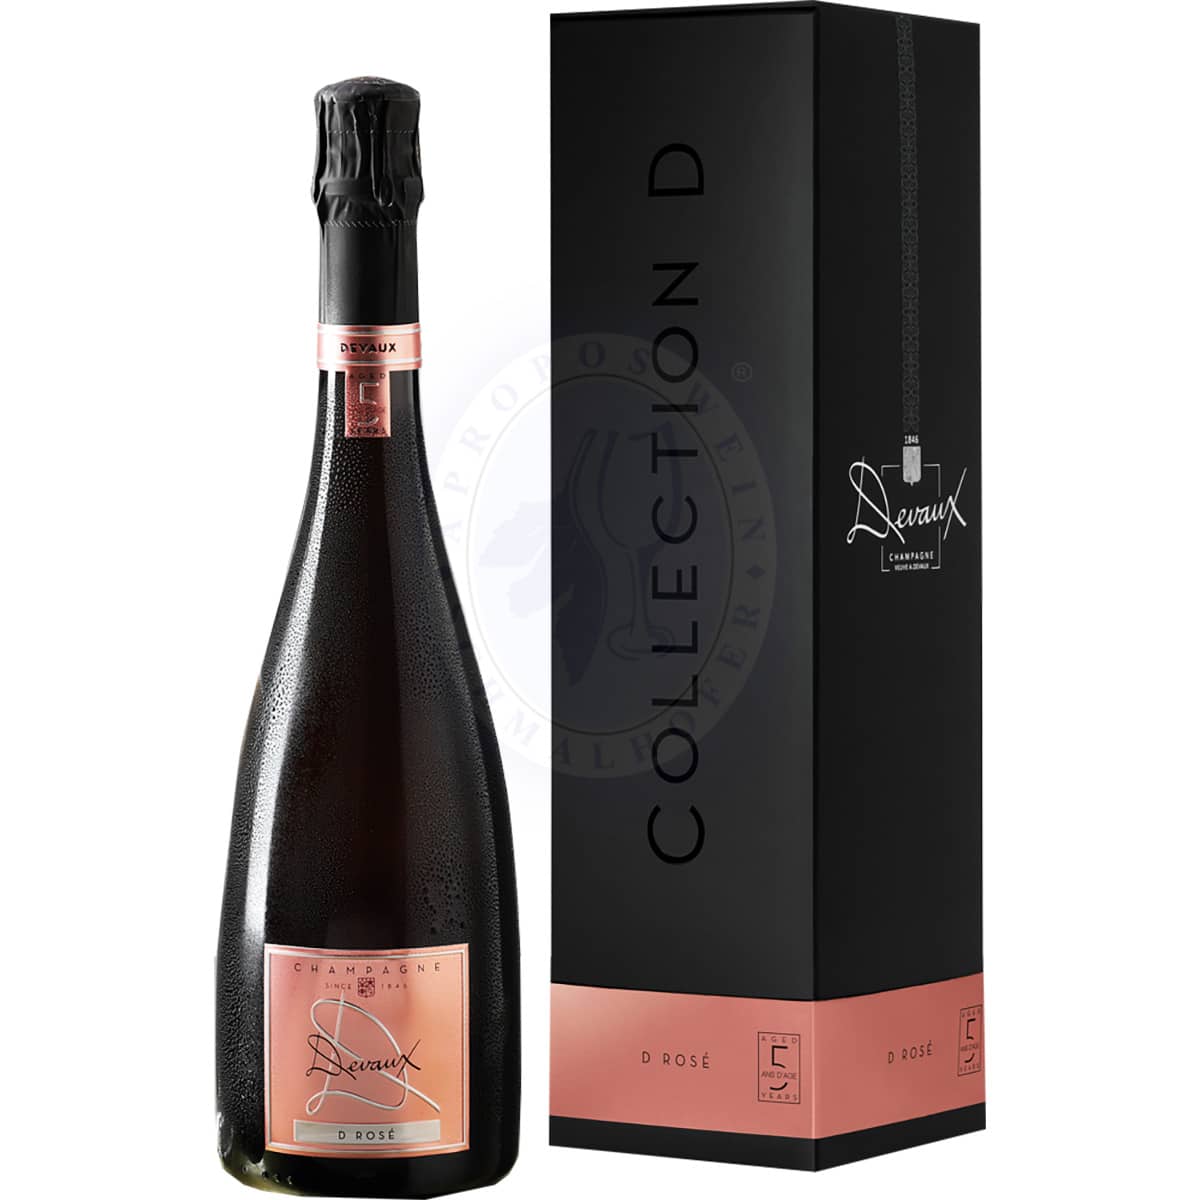 La Cuvée "D Rosé" Brut Bar-sur-Seine - Champagne Groupe Vinicole Champagne Devaux